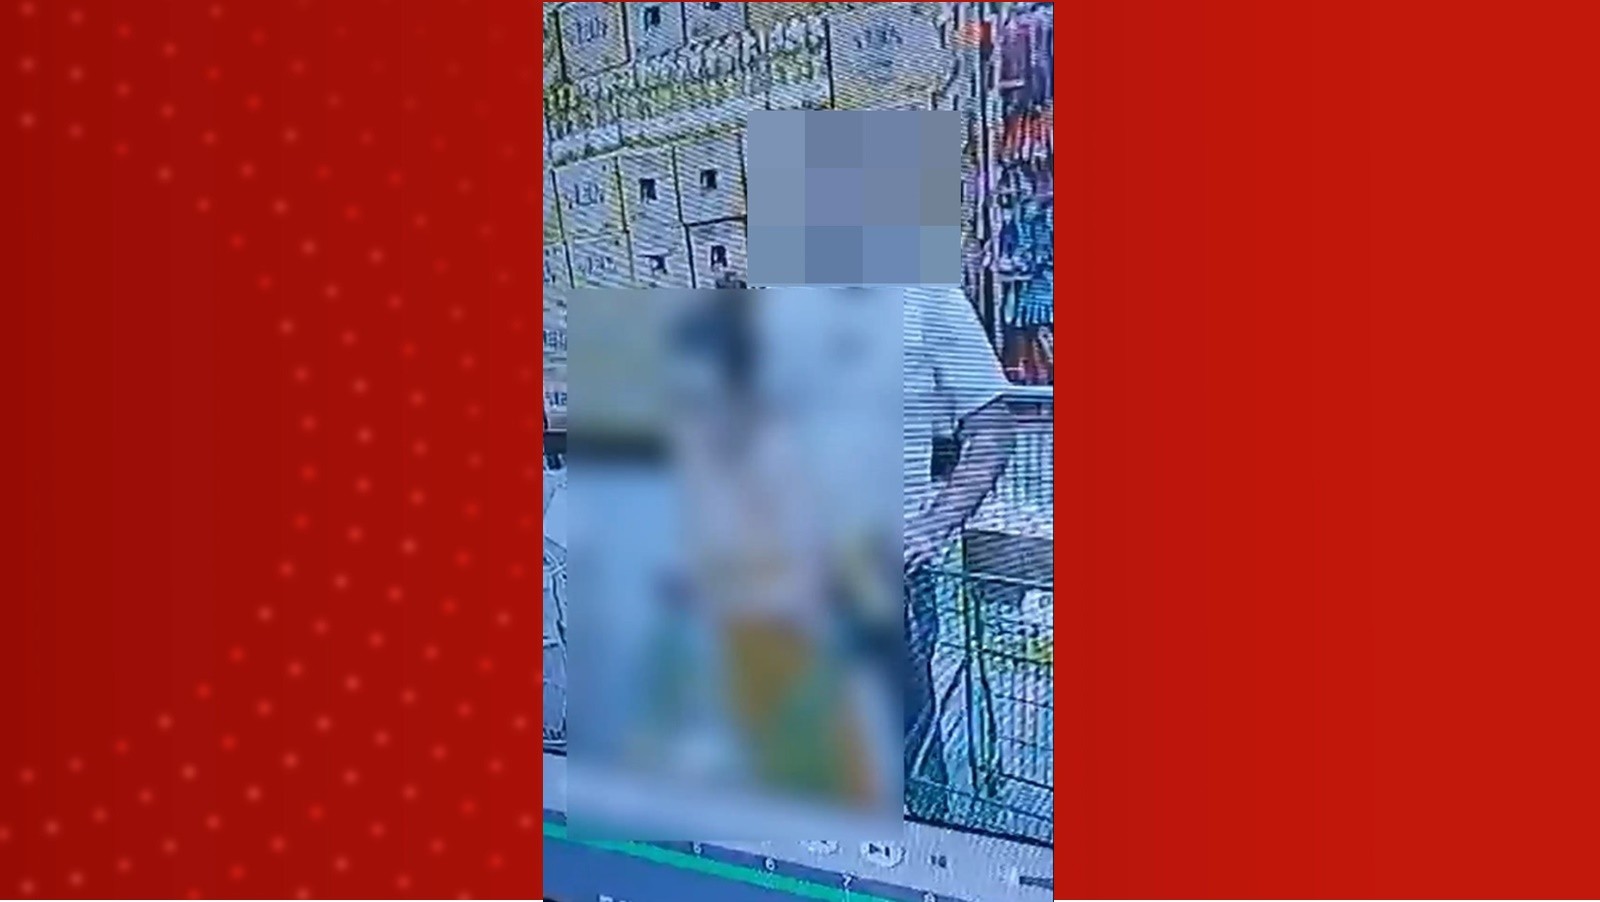 VÍDEO: Polícia Civil apura suspeita de importunação sexual contra mulher em fila de supermercado, em MG